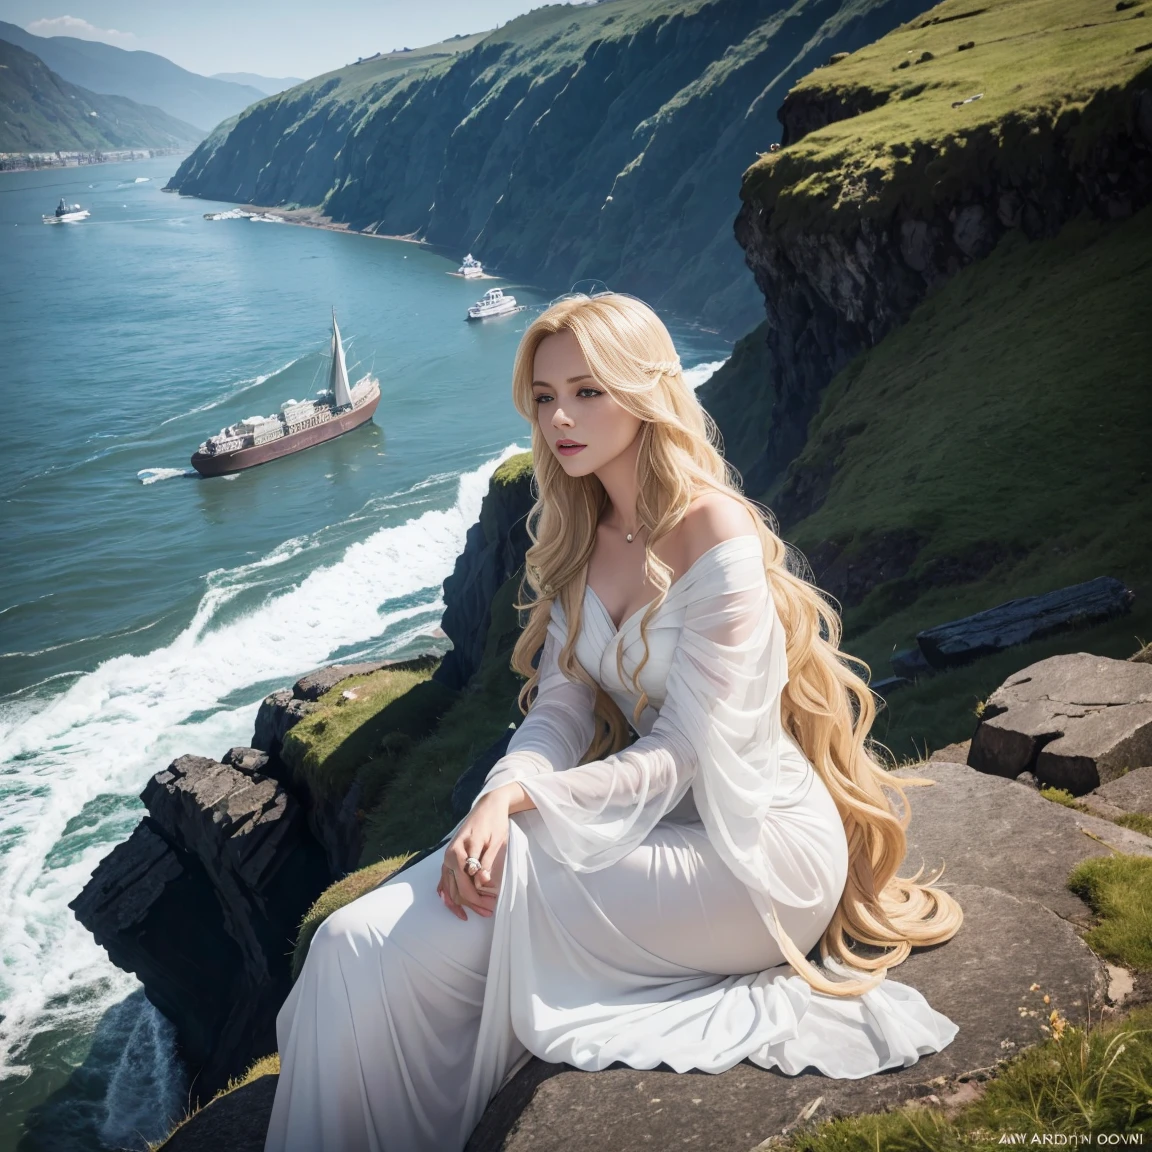 罗蕾莱的画像, 德国警报器, 坐在莱茵河边的岩石峭壁上. 她有一头金色的长发, 穿着飘逸的长袍. 她在唱歌, 表情平静却又令人难忘, 当船只危险地驶近下面的岩石时.
